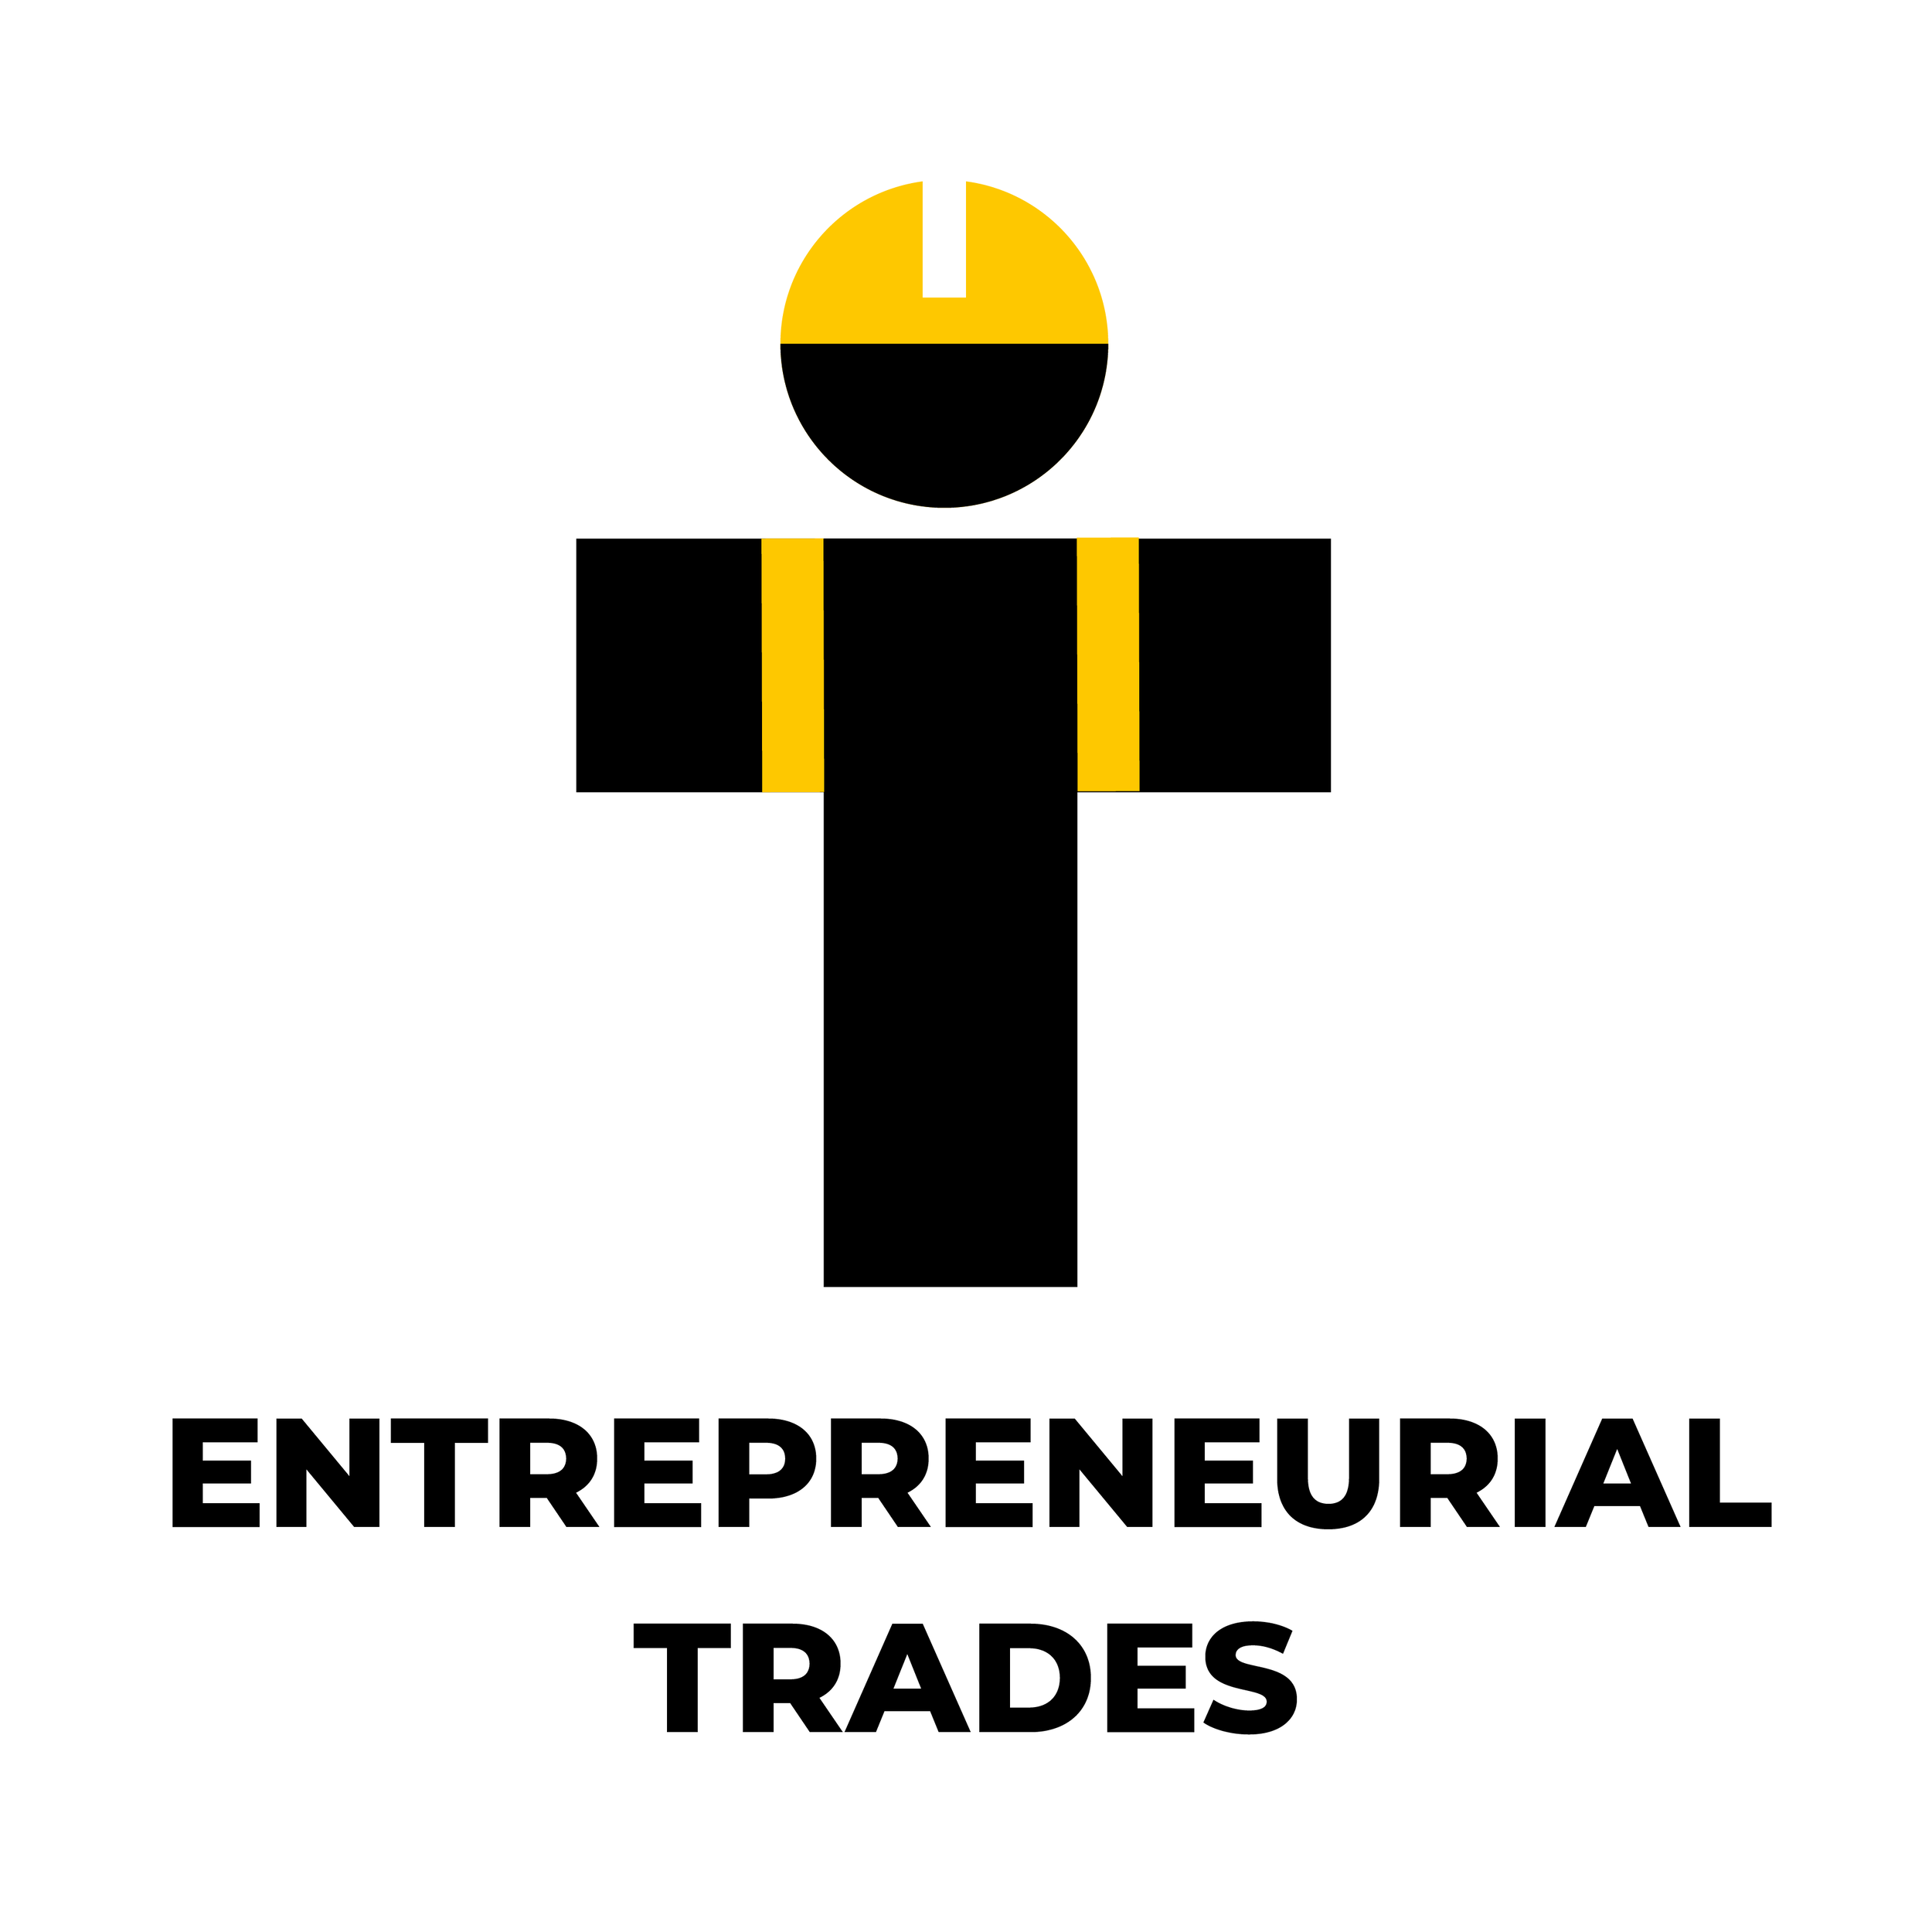 Entrepreneurial Trades